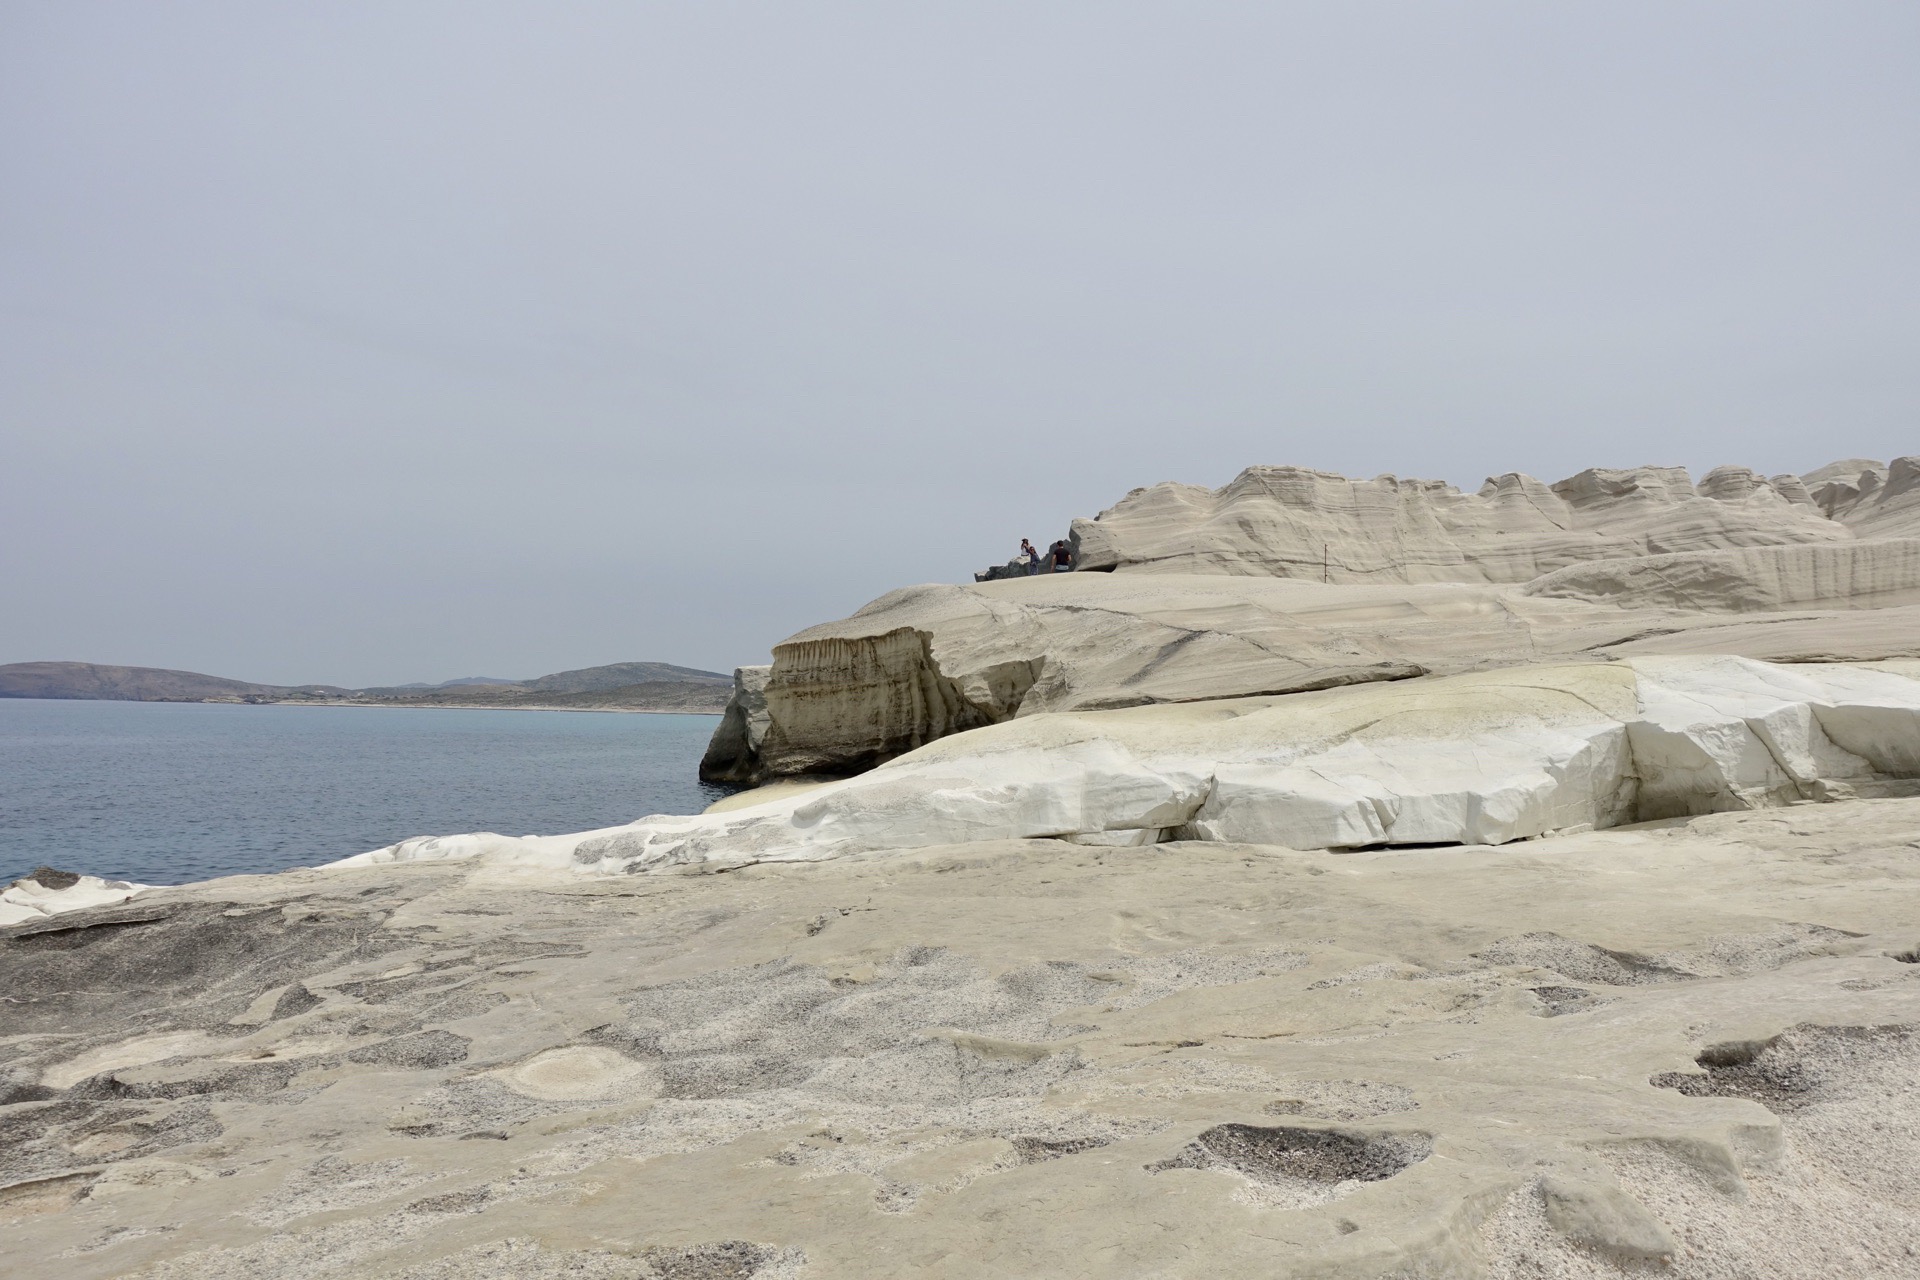 仿佛月球表面一般连绵起伏的纯白岩层•莎拉基尼可海滩~希腊米洛斯岛(Milos)☕️🍃～2019.5.